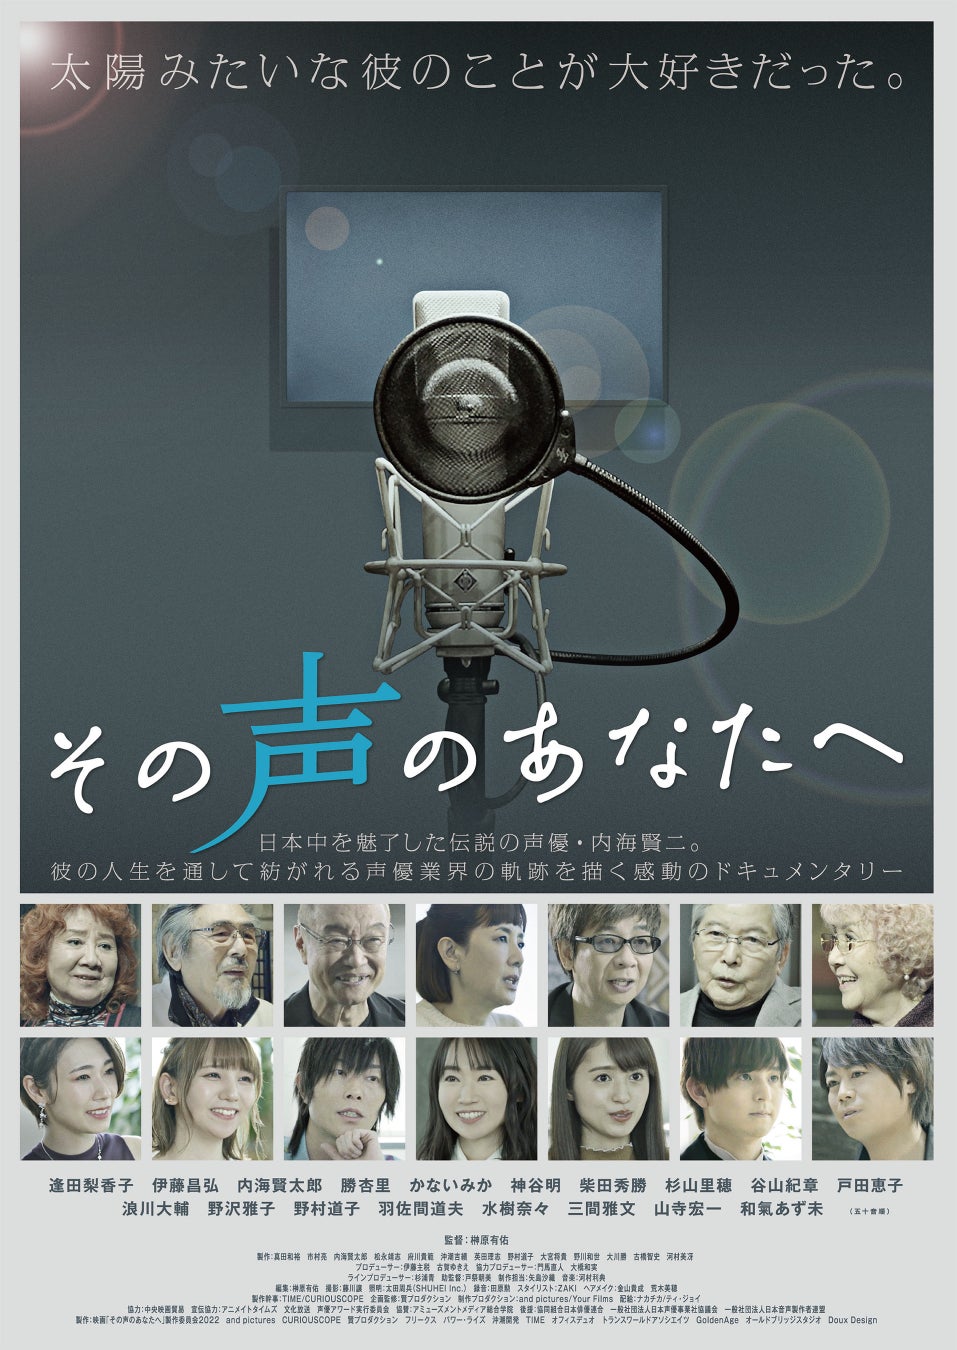 伝説の声優・内海賢二の人生を通して描いた日本声優業界の軌跡『その声のあなたへ』DVD発売決定！